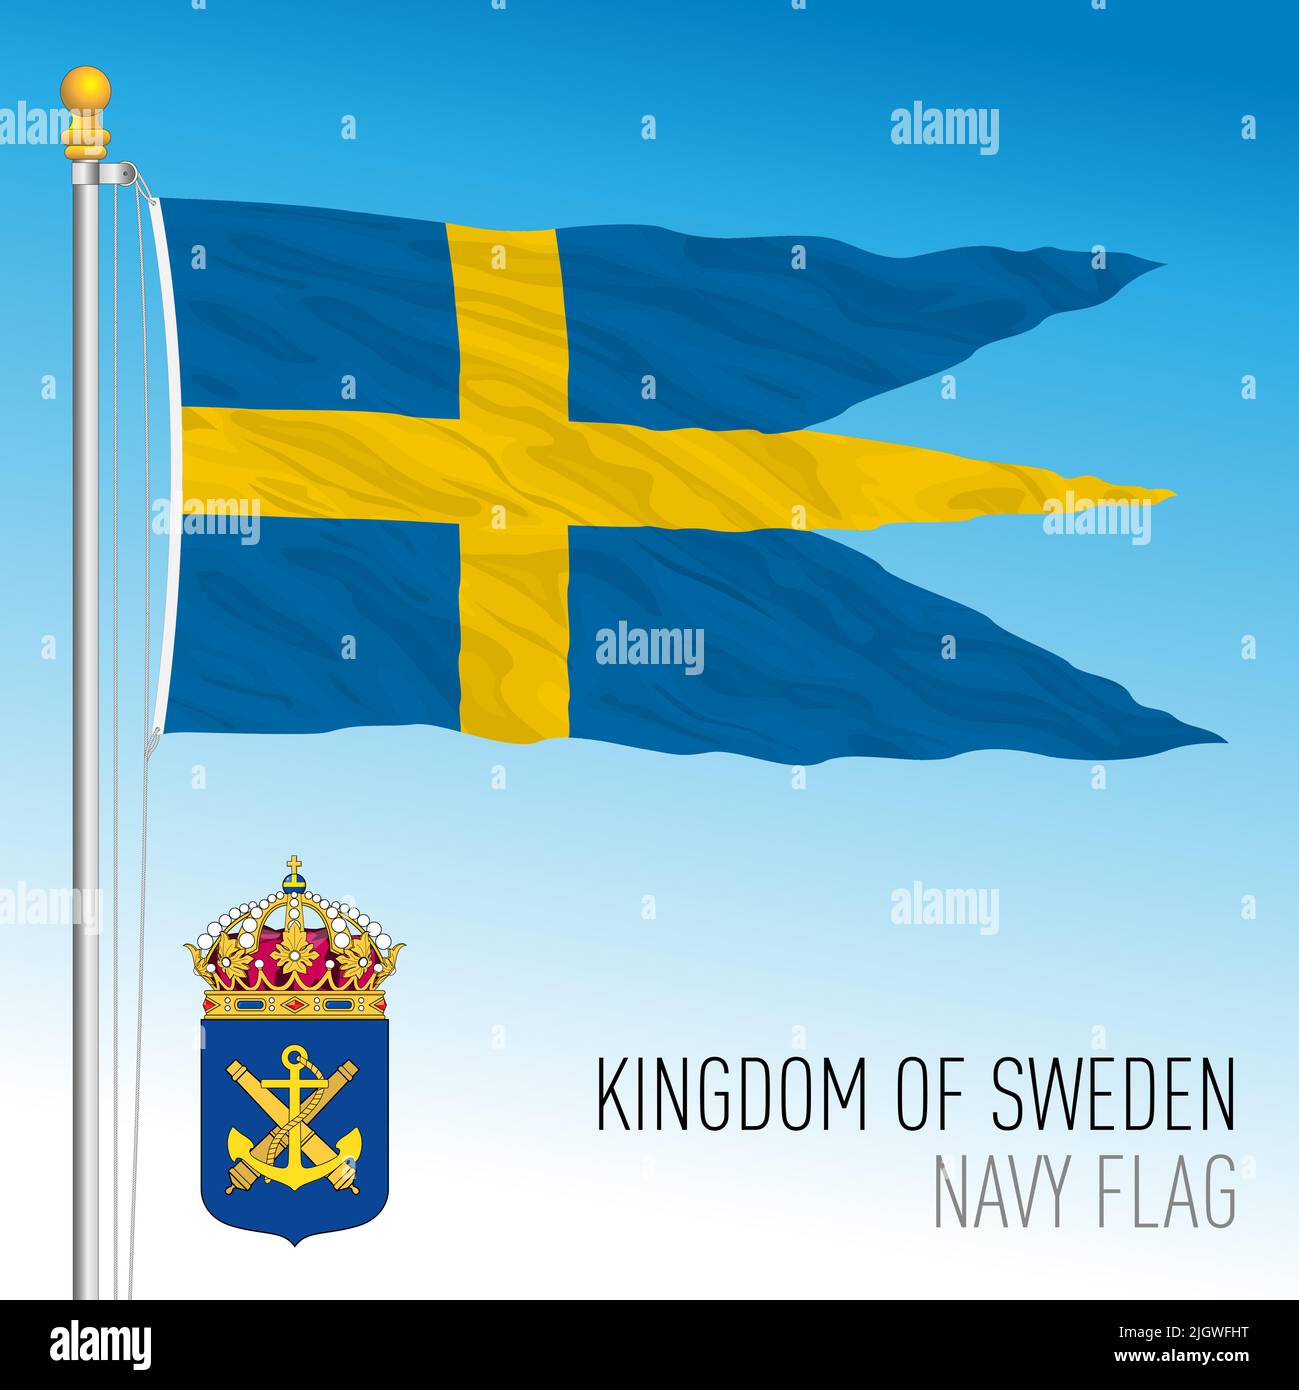 Drapeau et armoiries de la marine suédoise, Royaume de Suède, Union européenne, illustration vectorielle Illustration de Vecteur